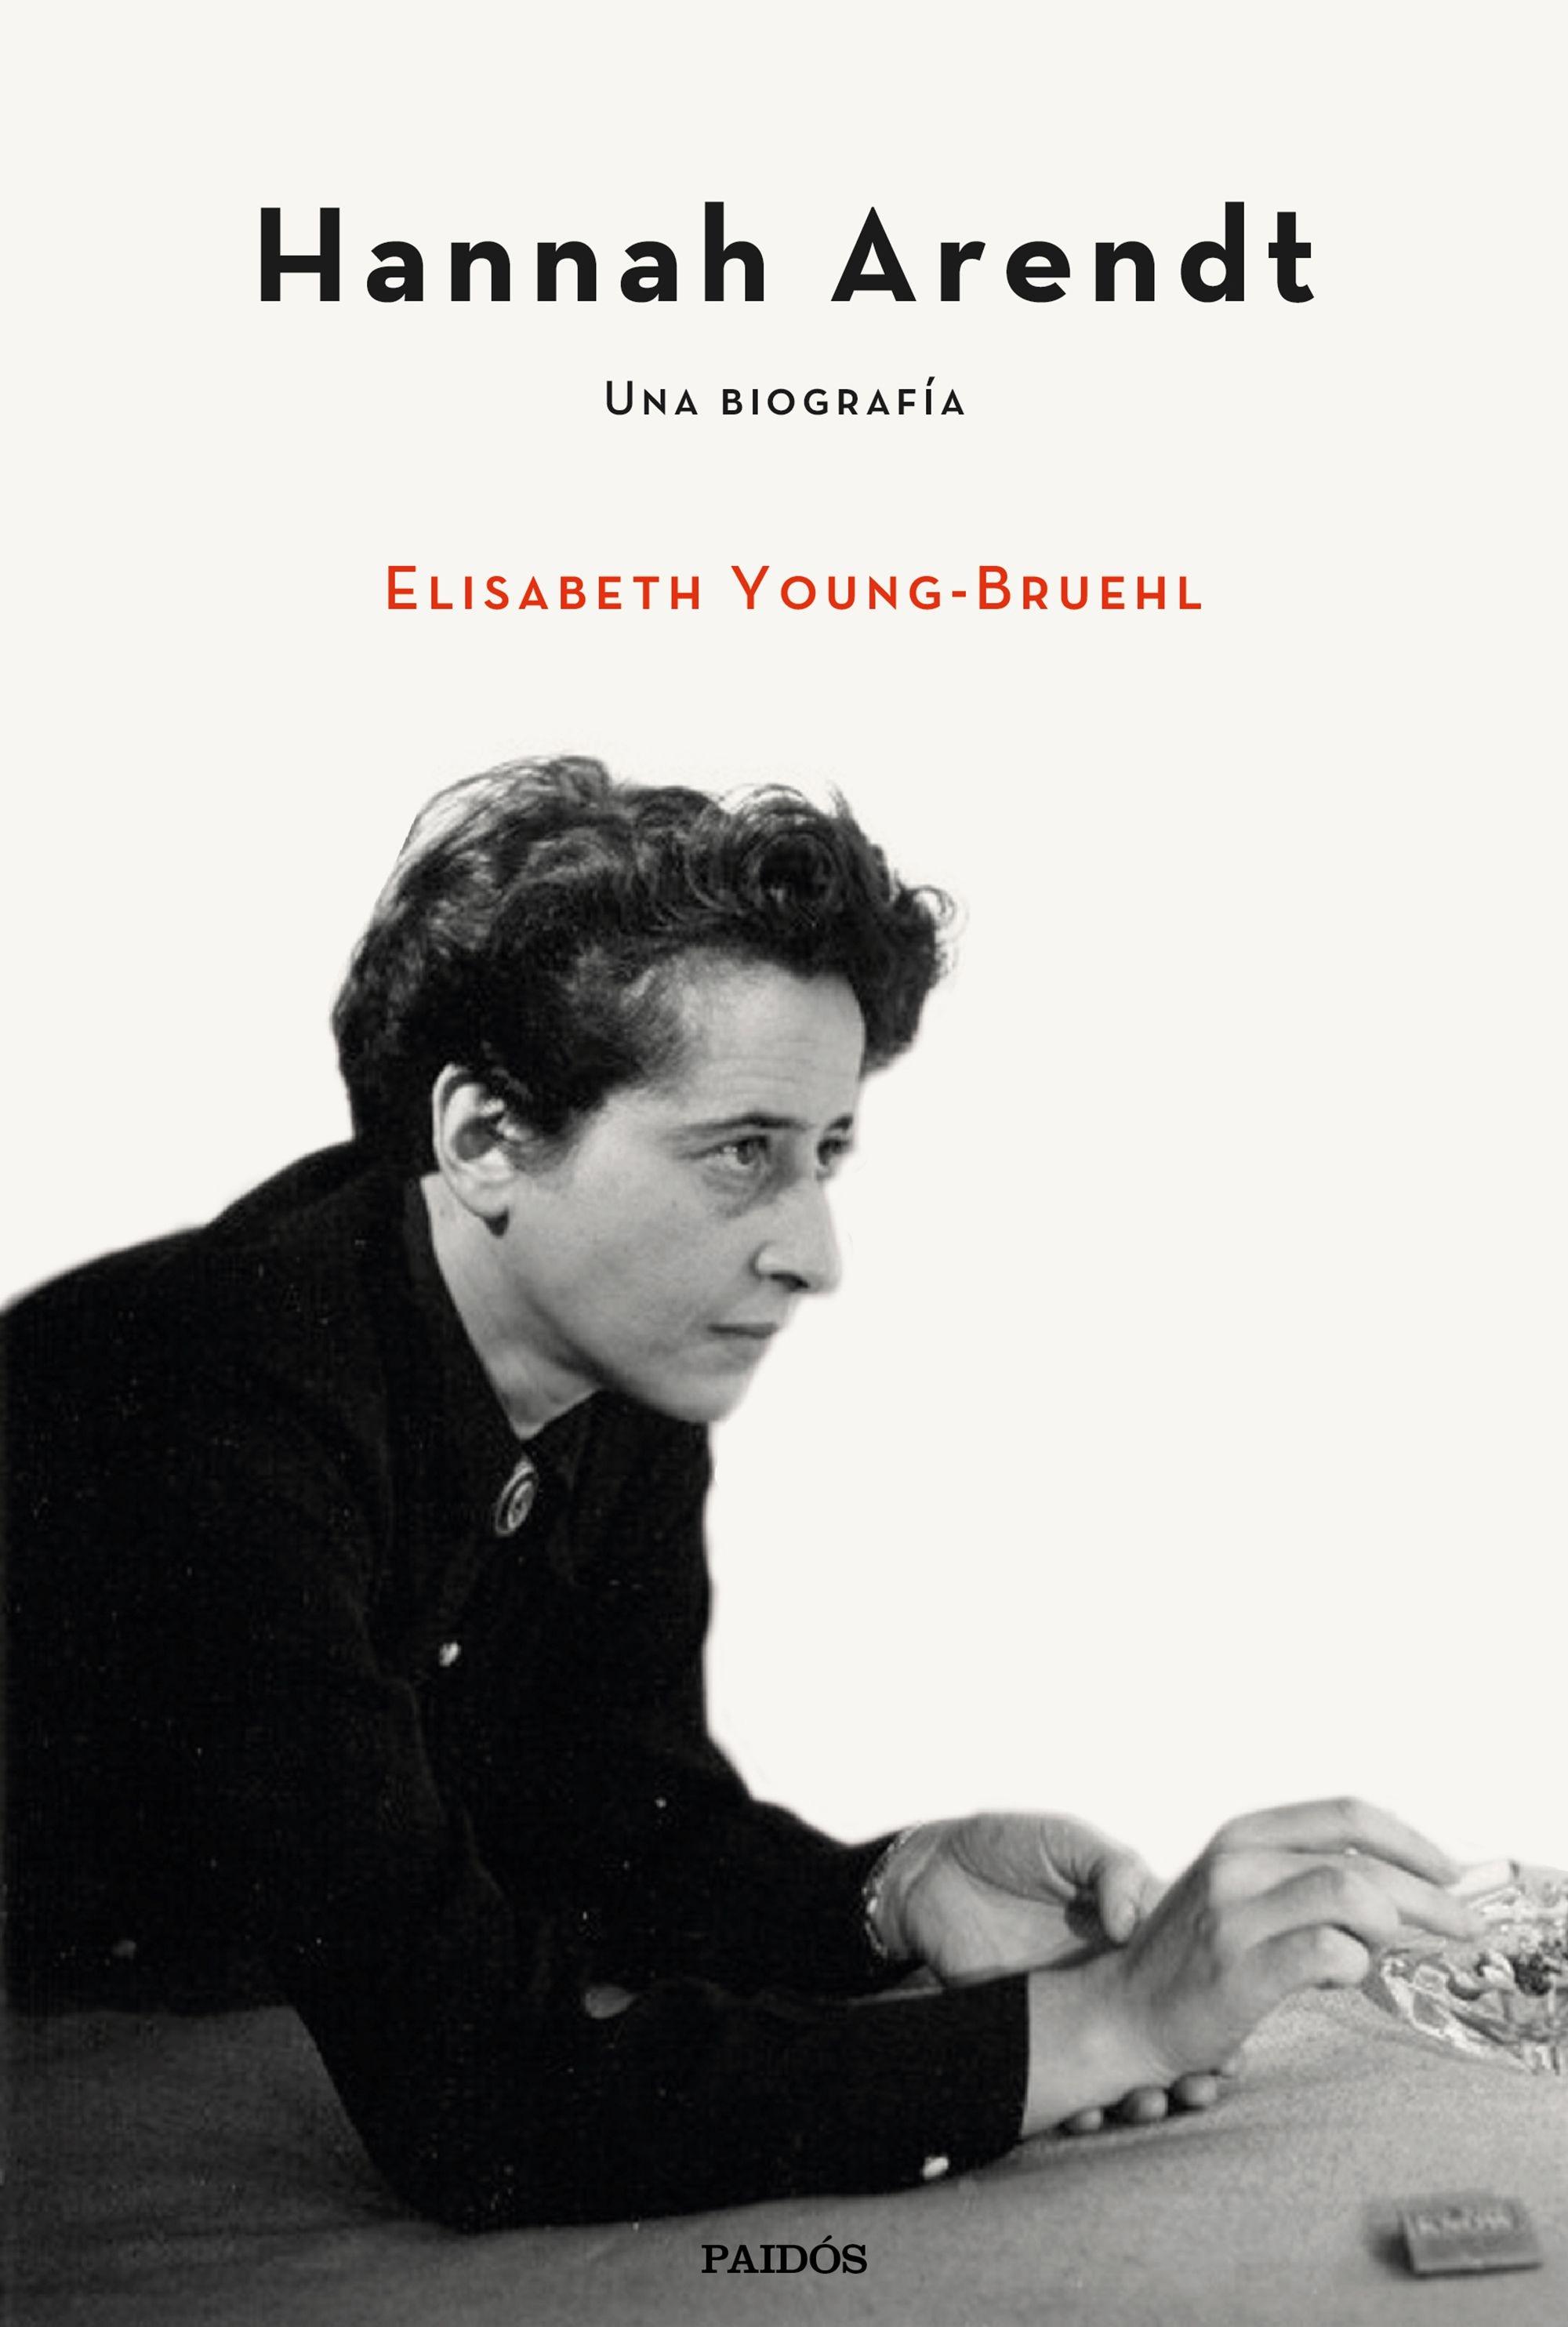 Hannah Arendt "Una Biografía". 